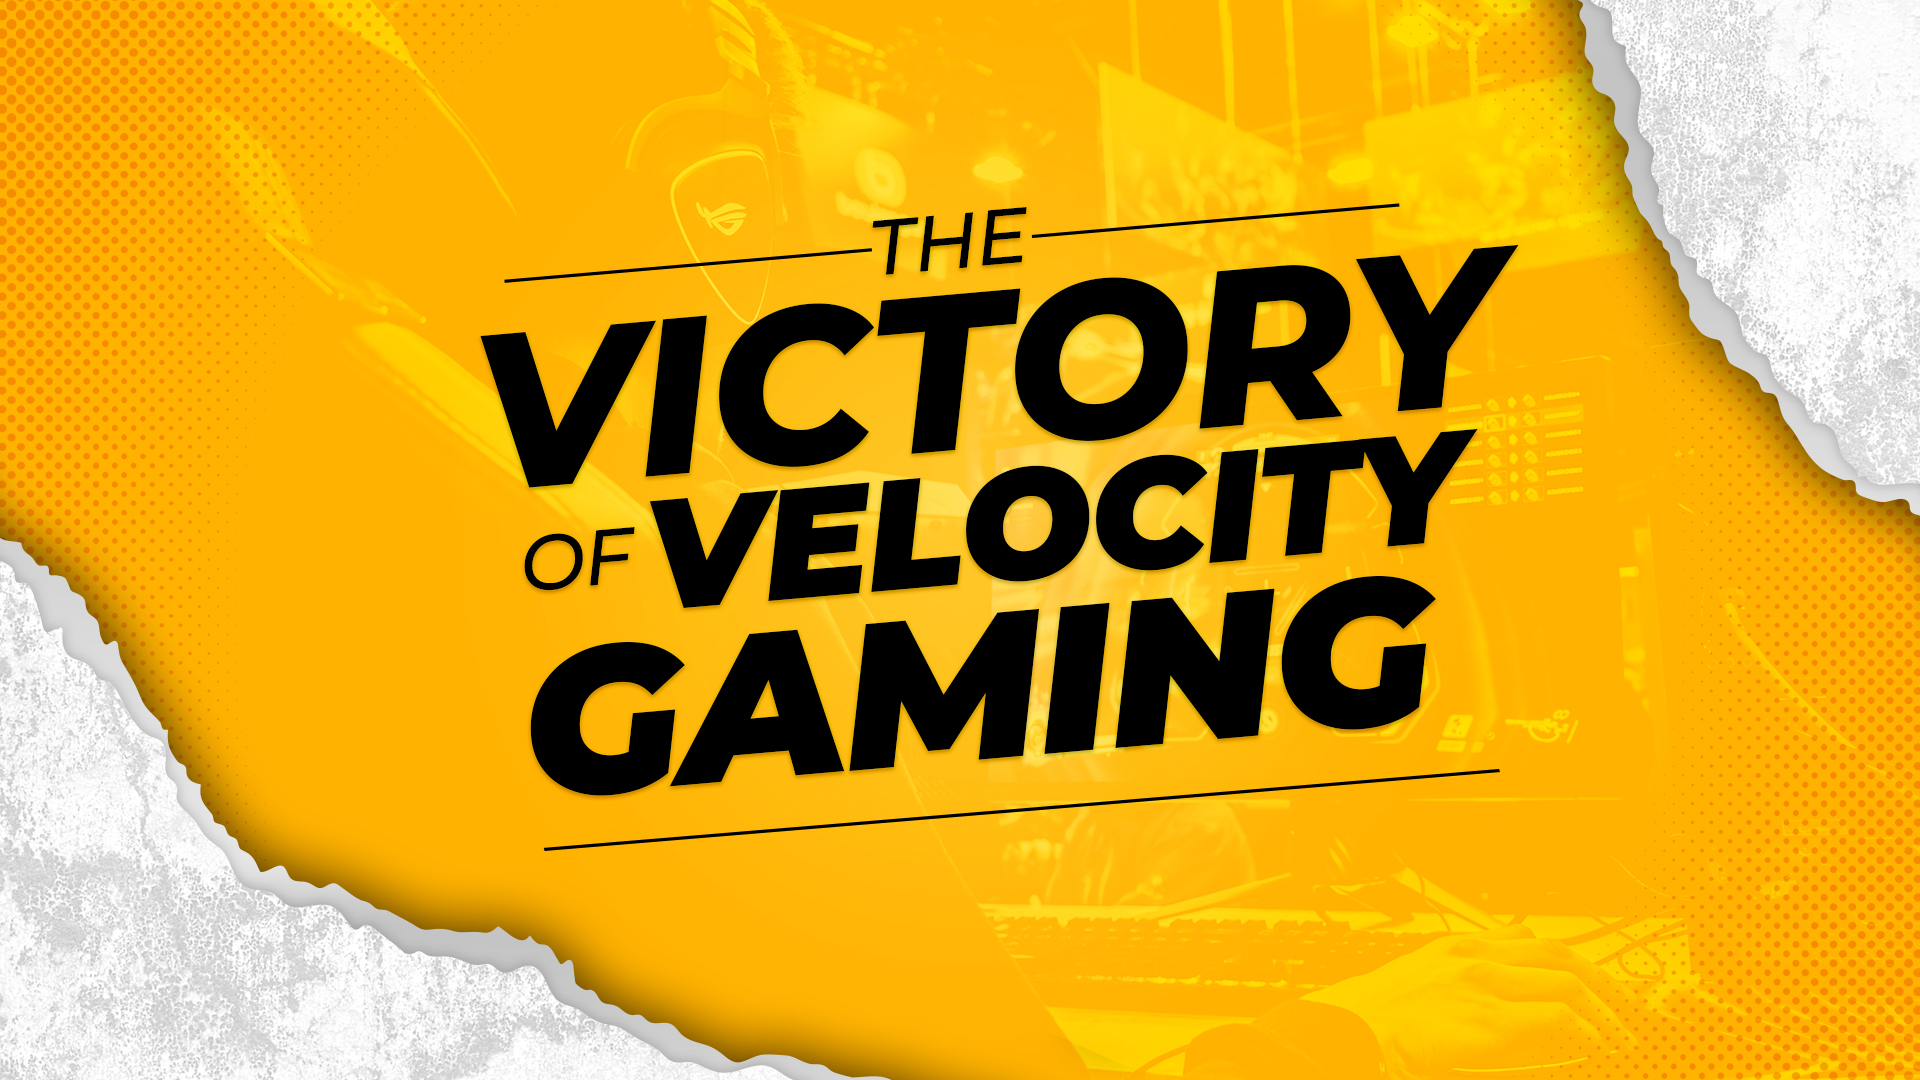 Velocity Gaming